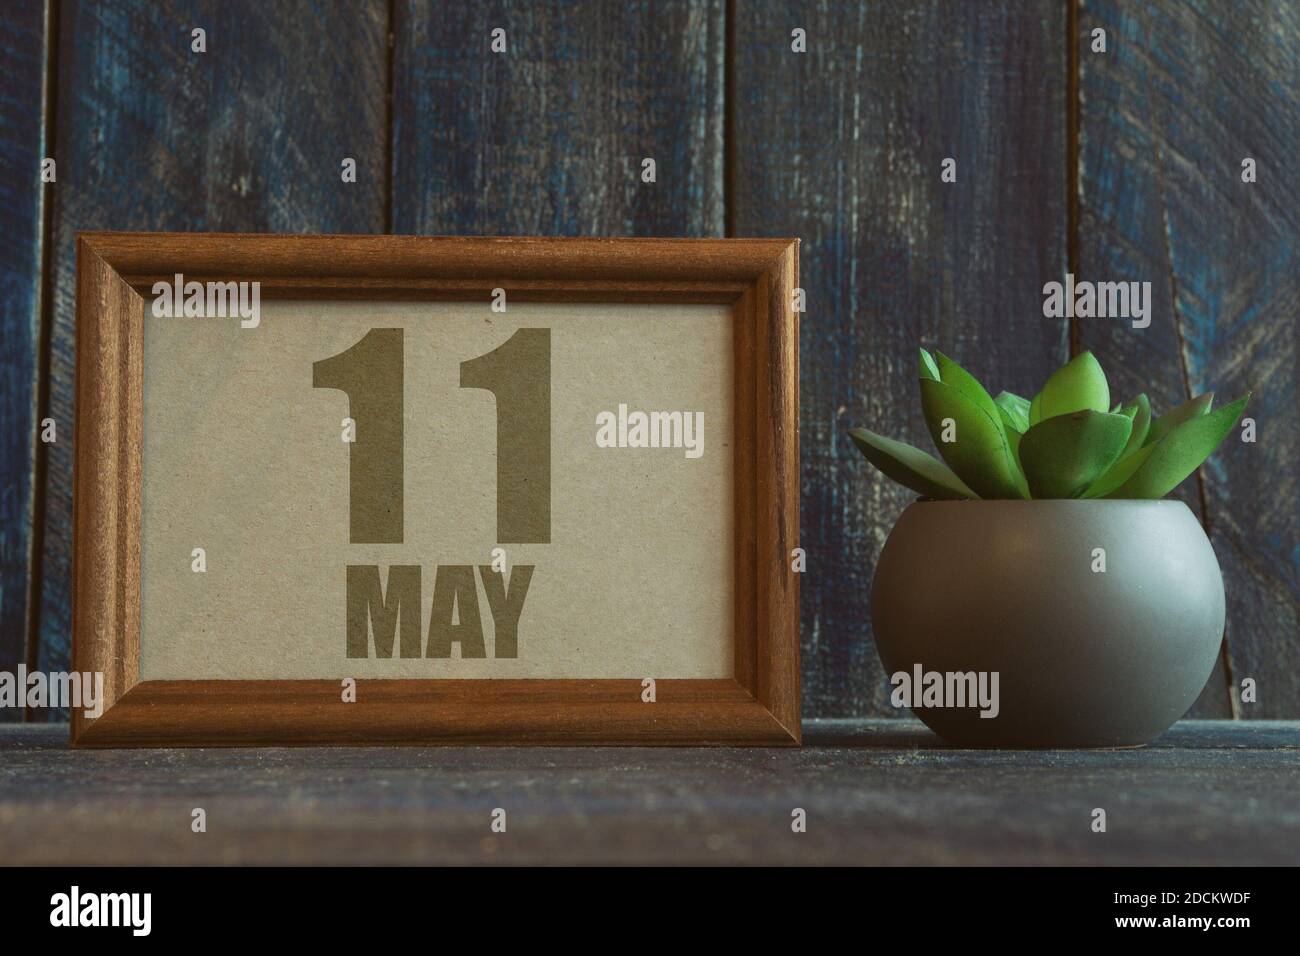 11 mai. Jour 11 du mois, date dans le cadre à côté de succulent sur fond de bois printemps mois, jour de l'année concept Banque D'Images